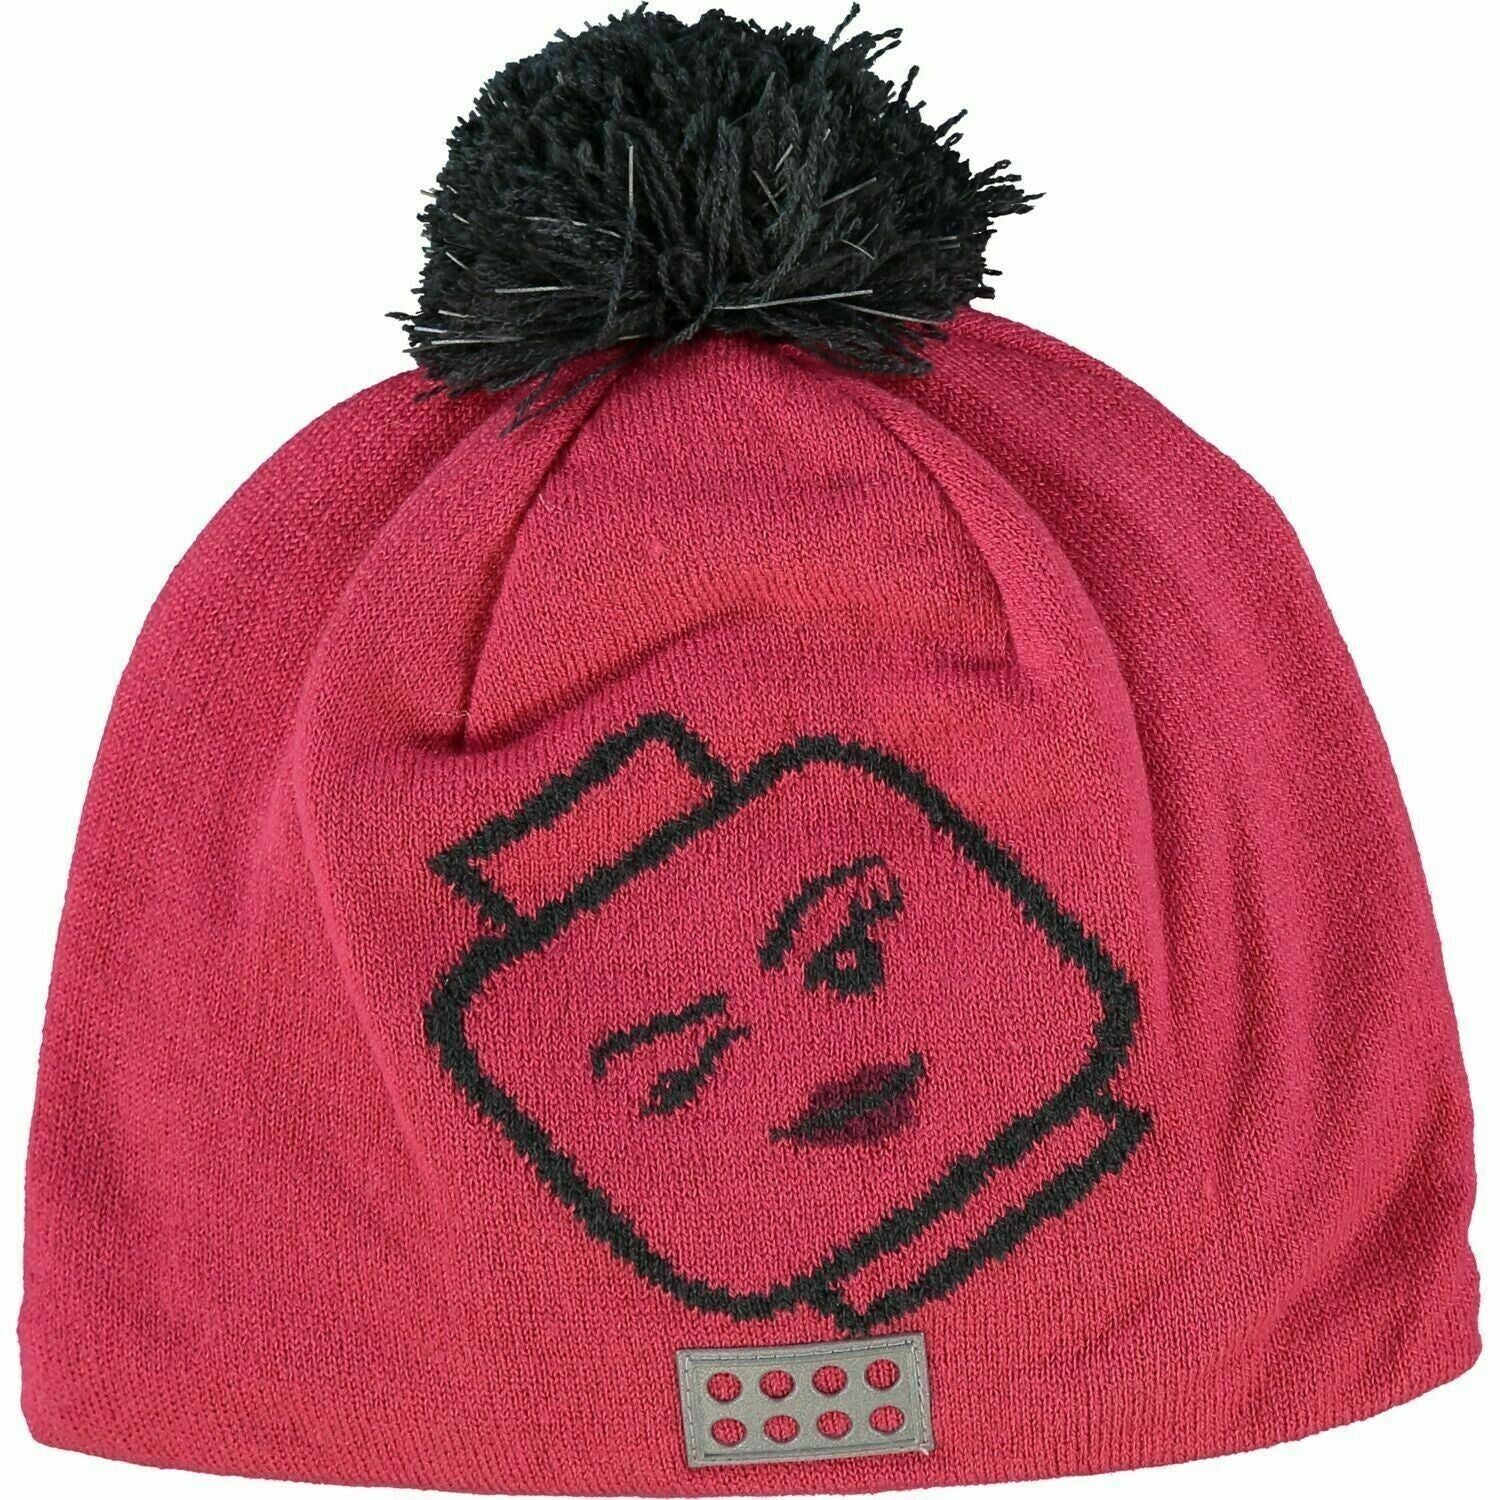 LEGOWEAR - AGATA Girls' Kids' Pom Pom Beanie Hat, Pink size 8-11 years